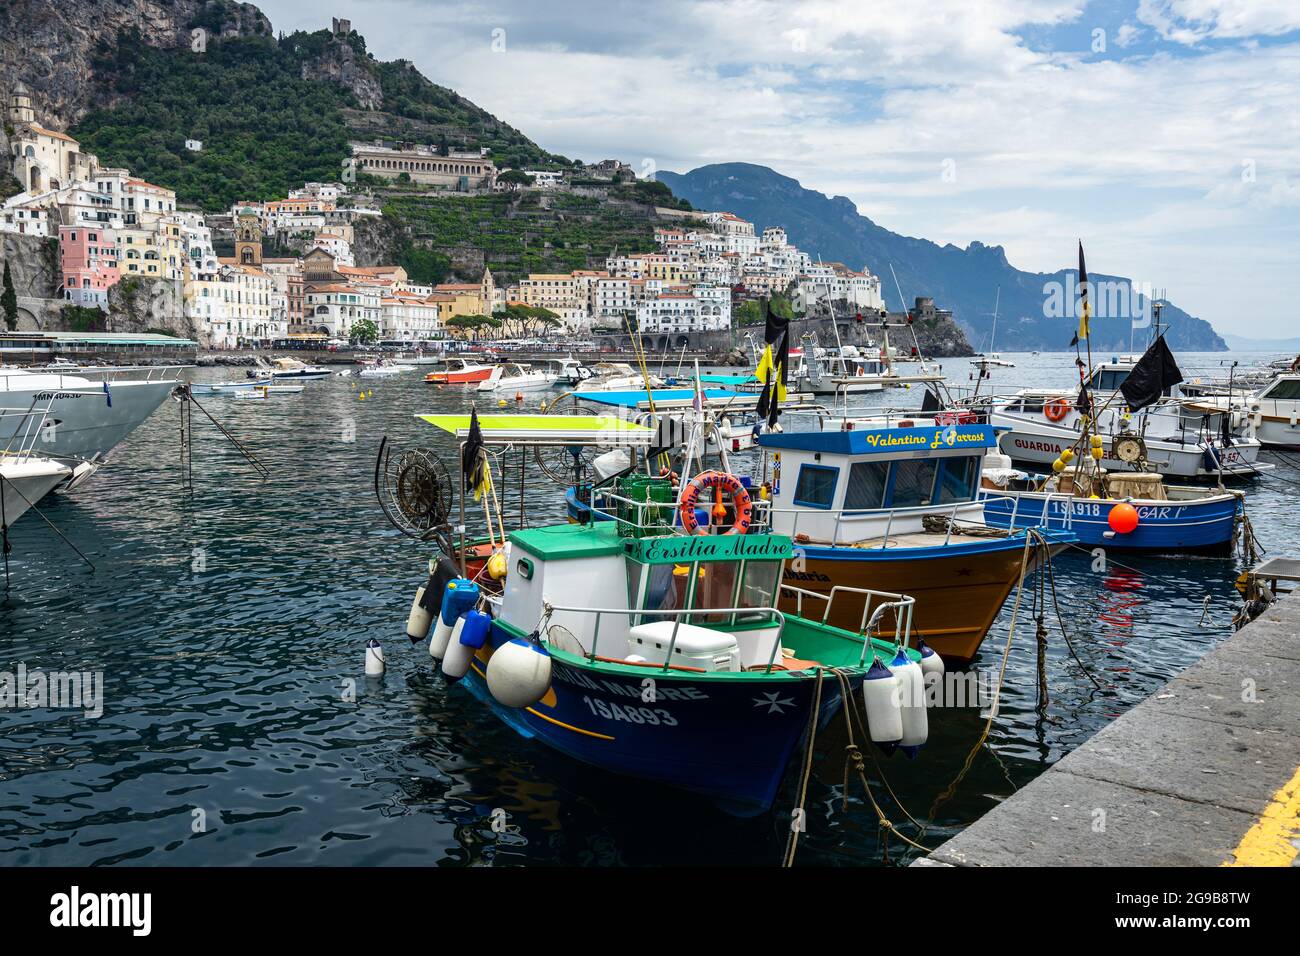 Bateaux à poissons amarrés au port d'Amalfi avec la ville en arrière-plan. Amalfi, Italie, juin 2021 Banque D'Images